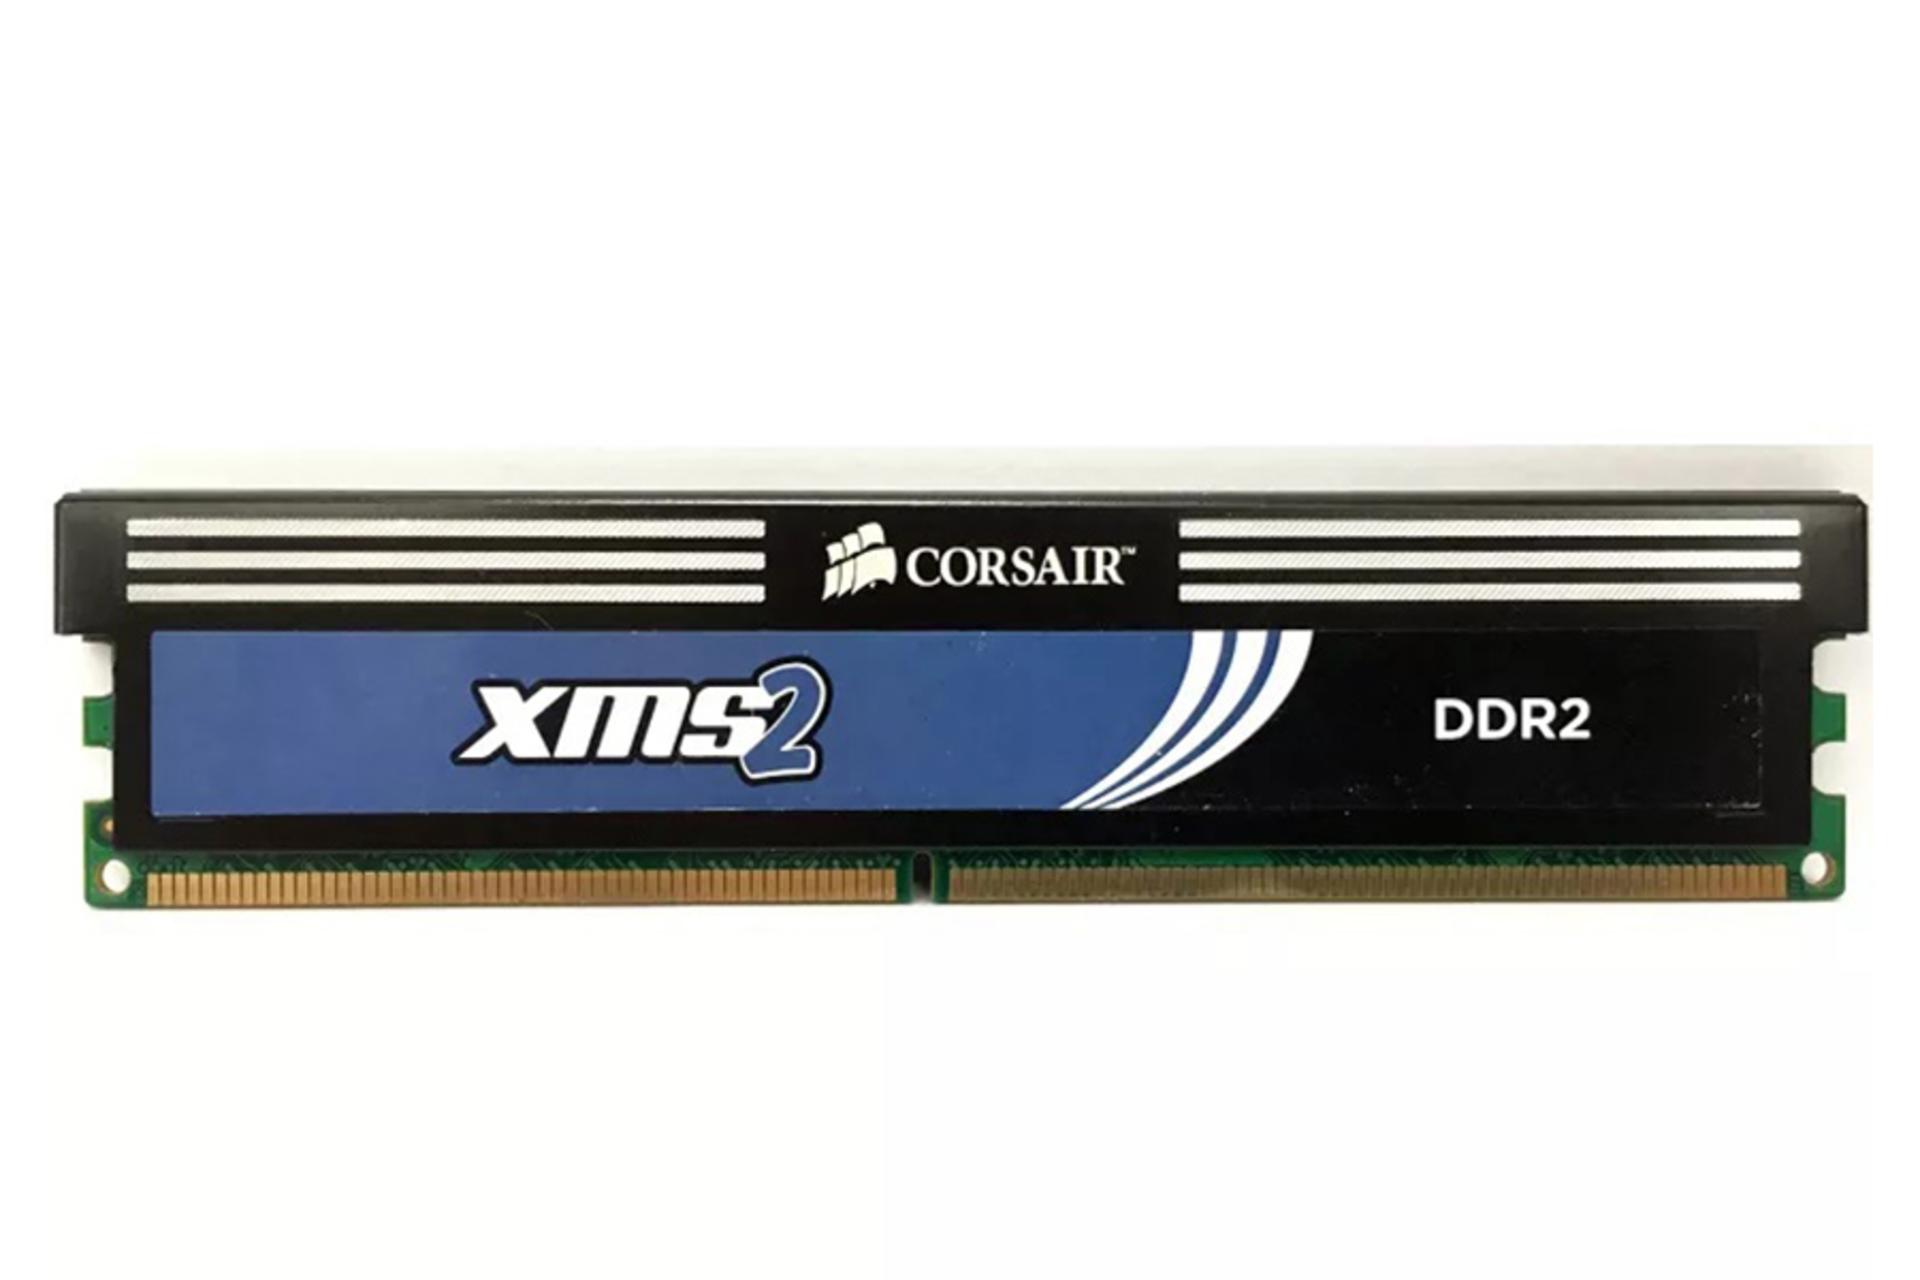 نمای جلوی رم کورسیر XMS2 ظرفیت 2 گیگابایت از نوع DDR2-1066